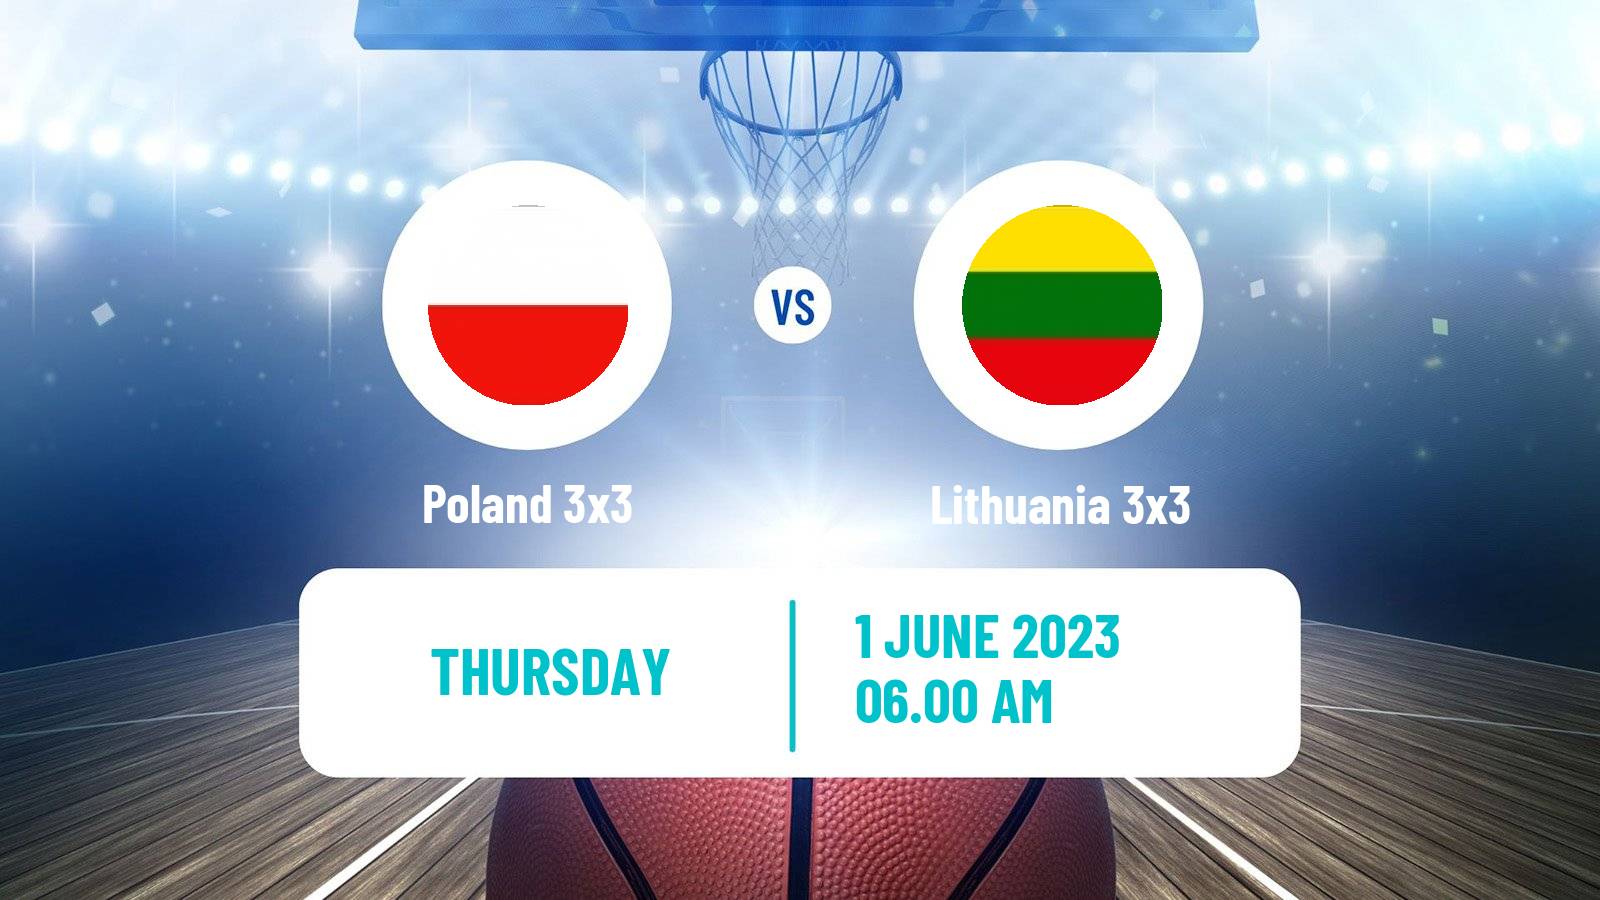 Basketball World Cup Basketball 3x3 Poland 3x3 - Lithuania 3x3